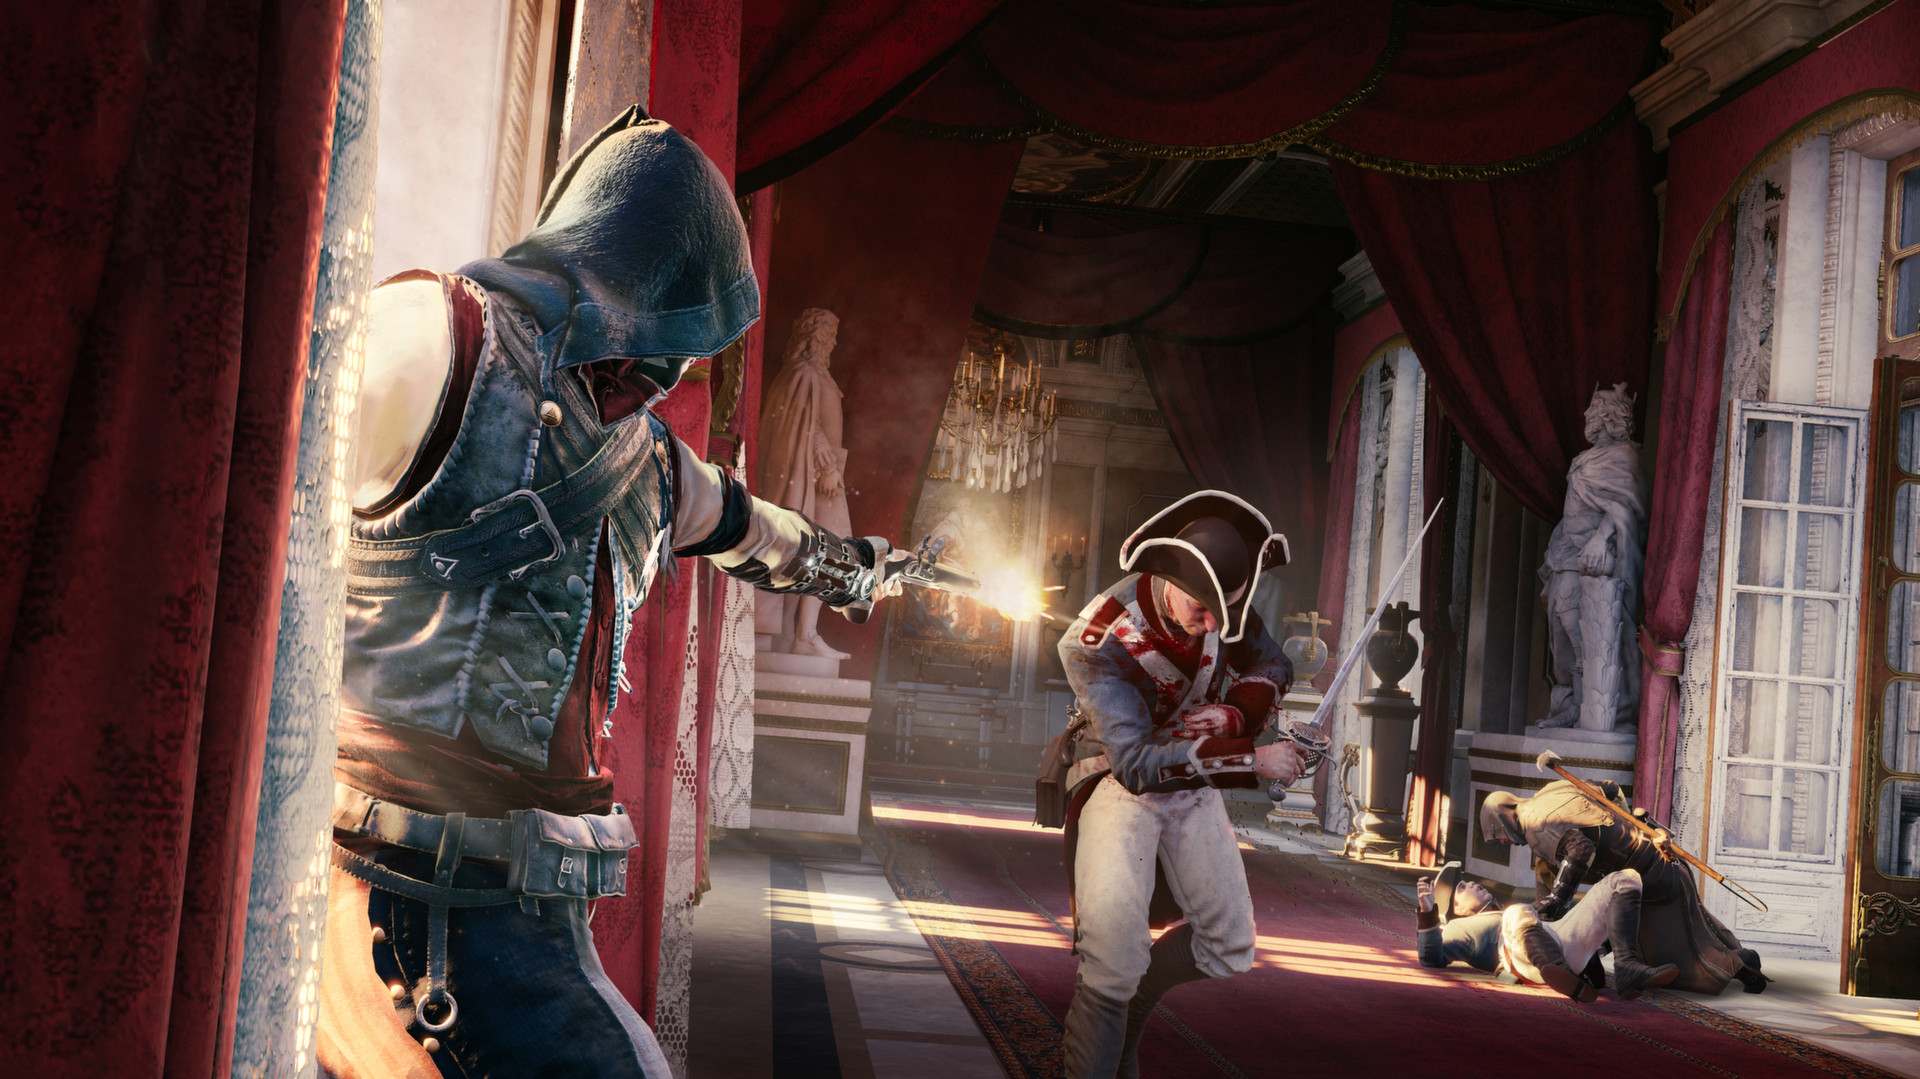 Assassin's Creed Valhalla - requisitos mínimos e recomendados para PC 